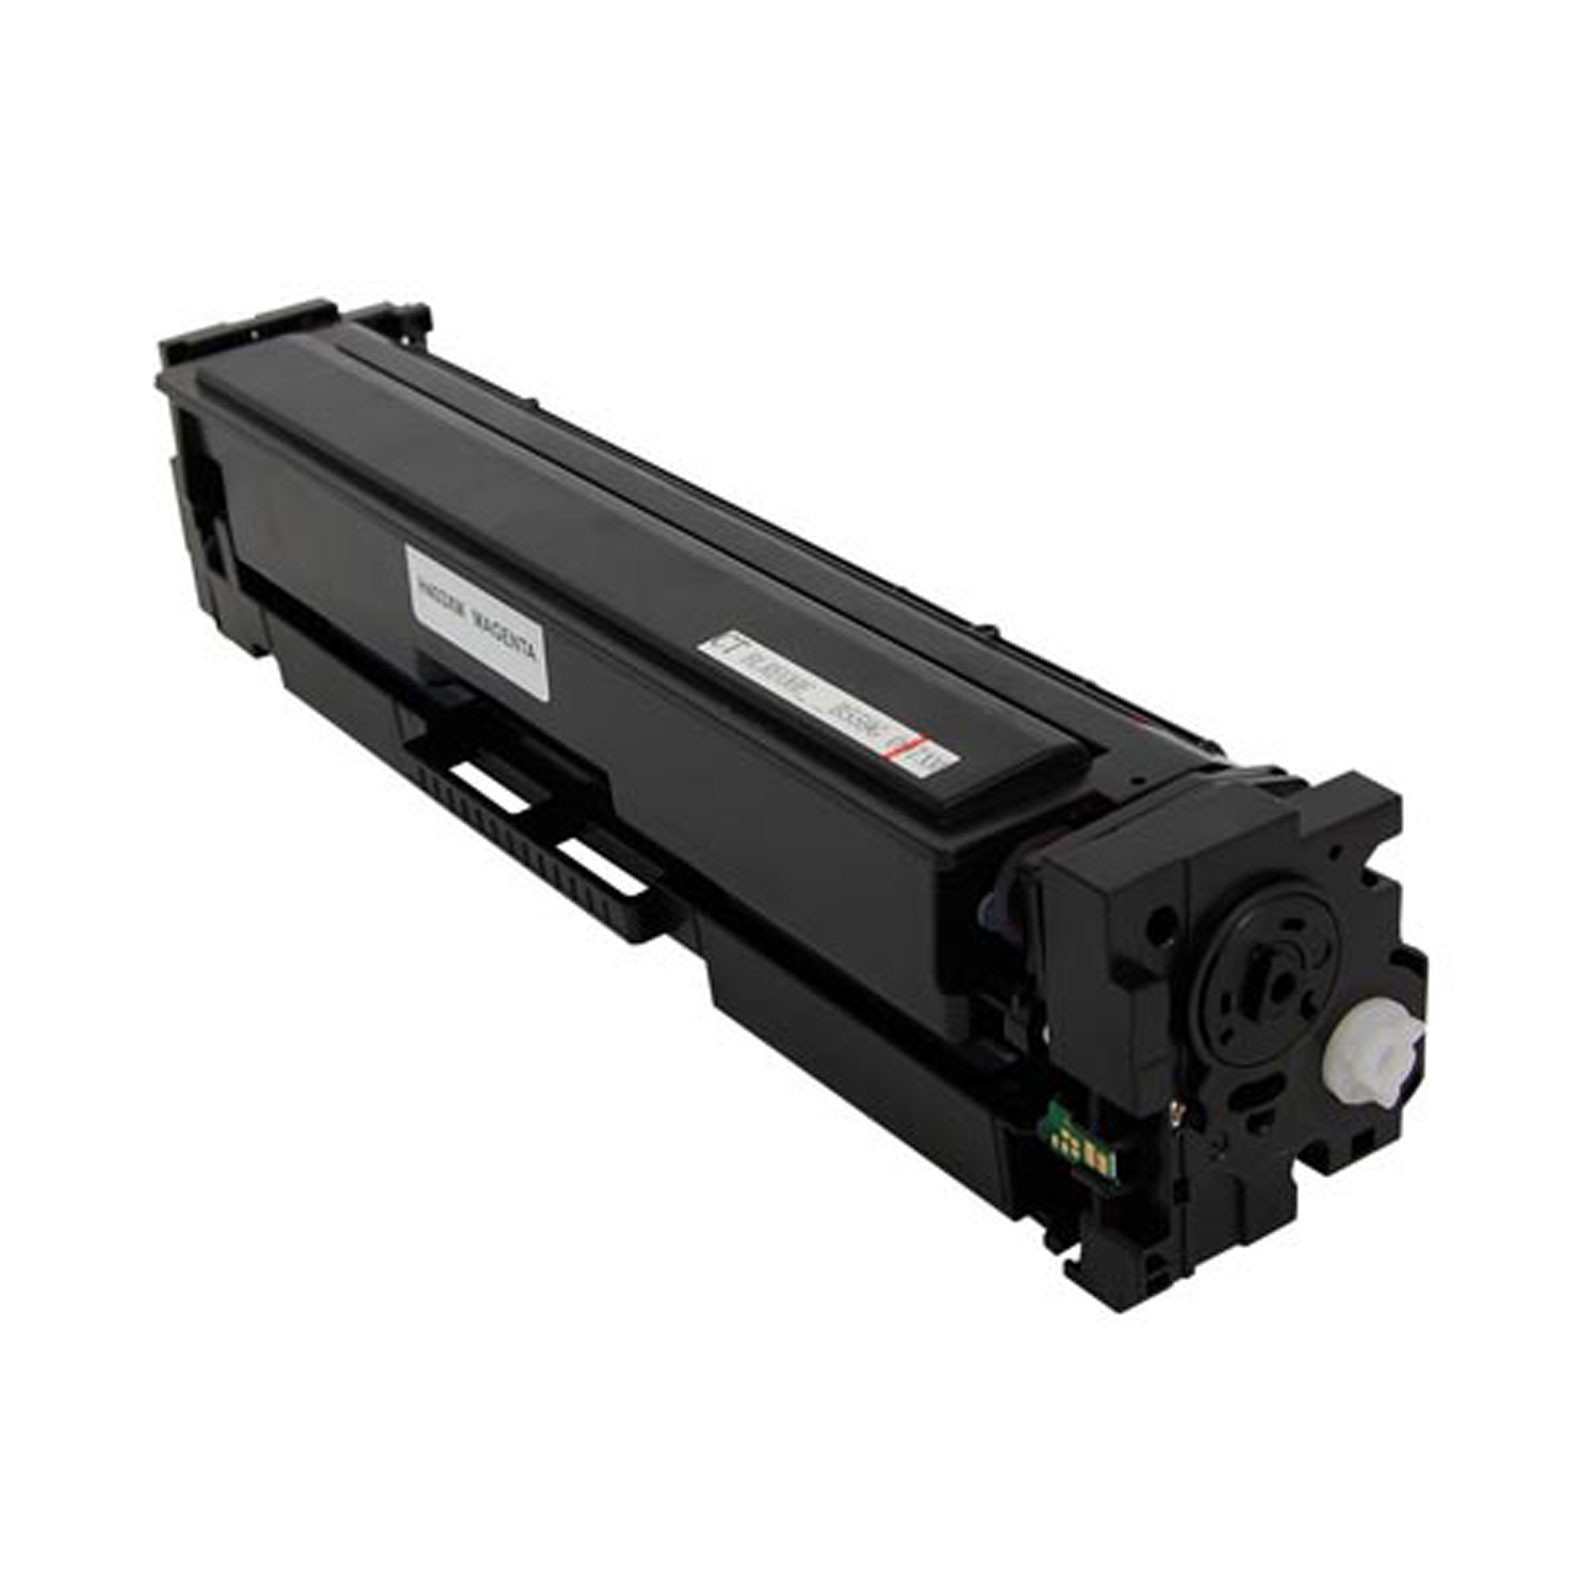 HP CF403X Compatible Toner Color: Magenta, High Yield: 2300 (Default)